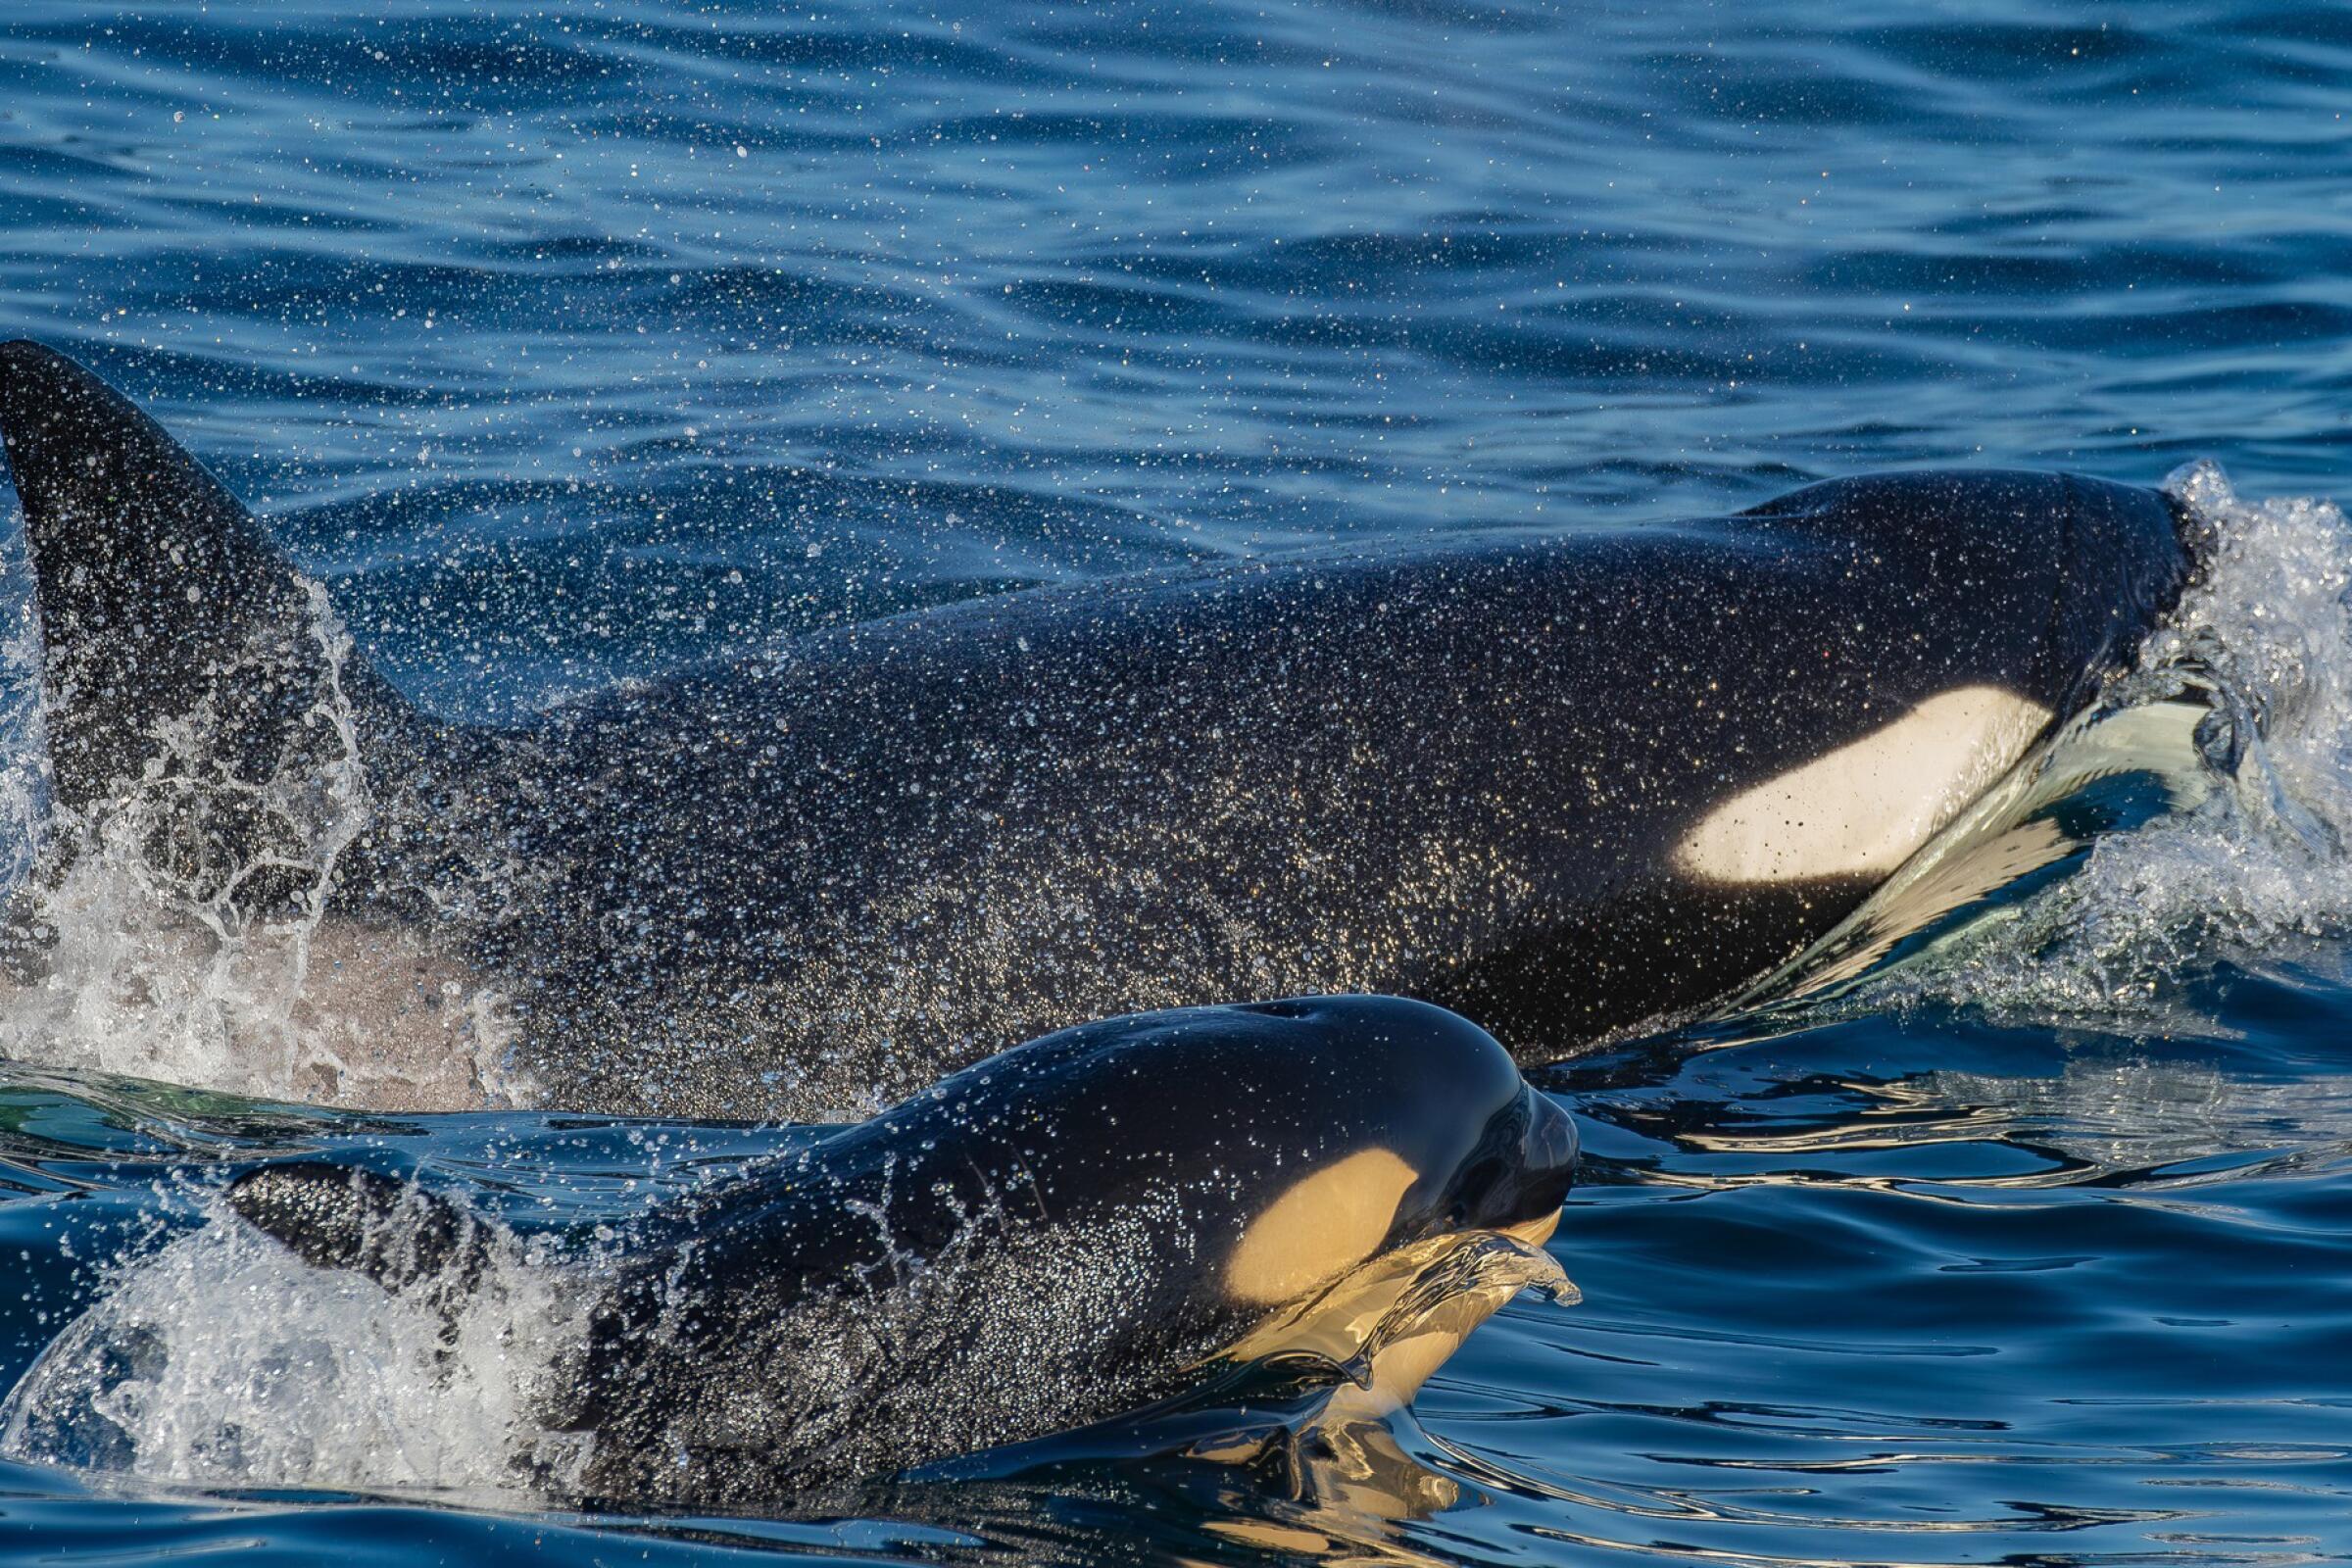 Killer whale punts sea lion 20 feet in the air to teach calf